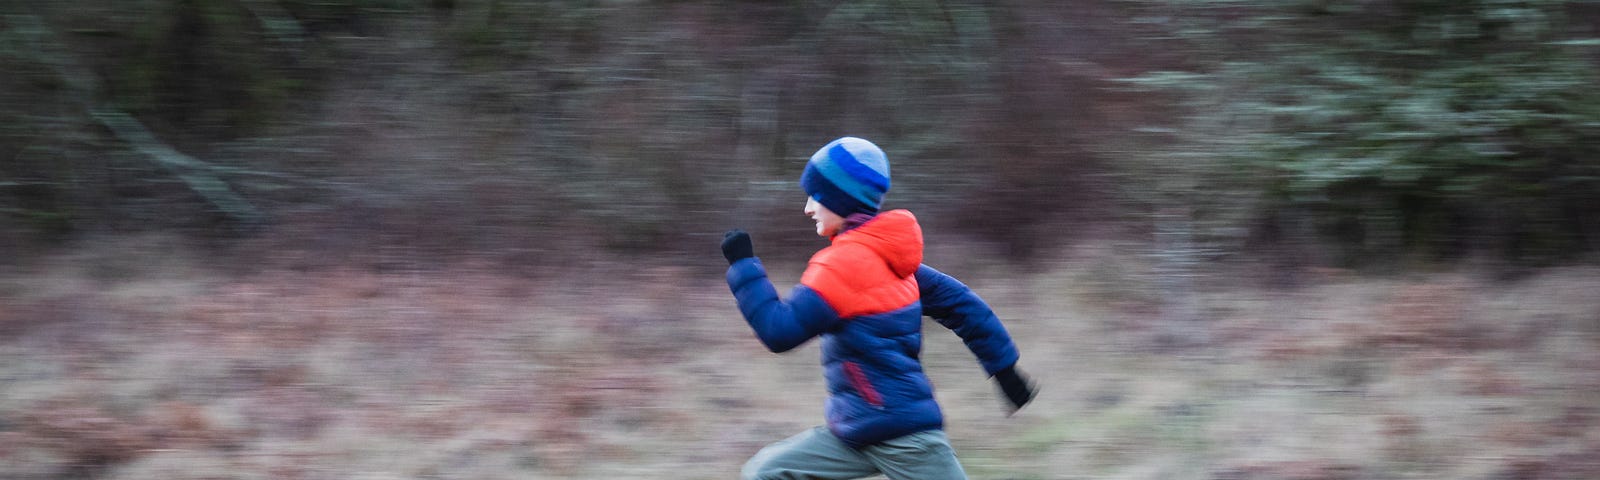 A sprinting boy.